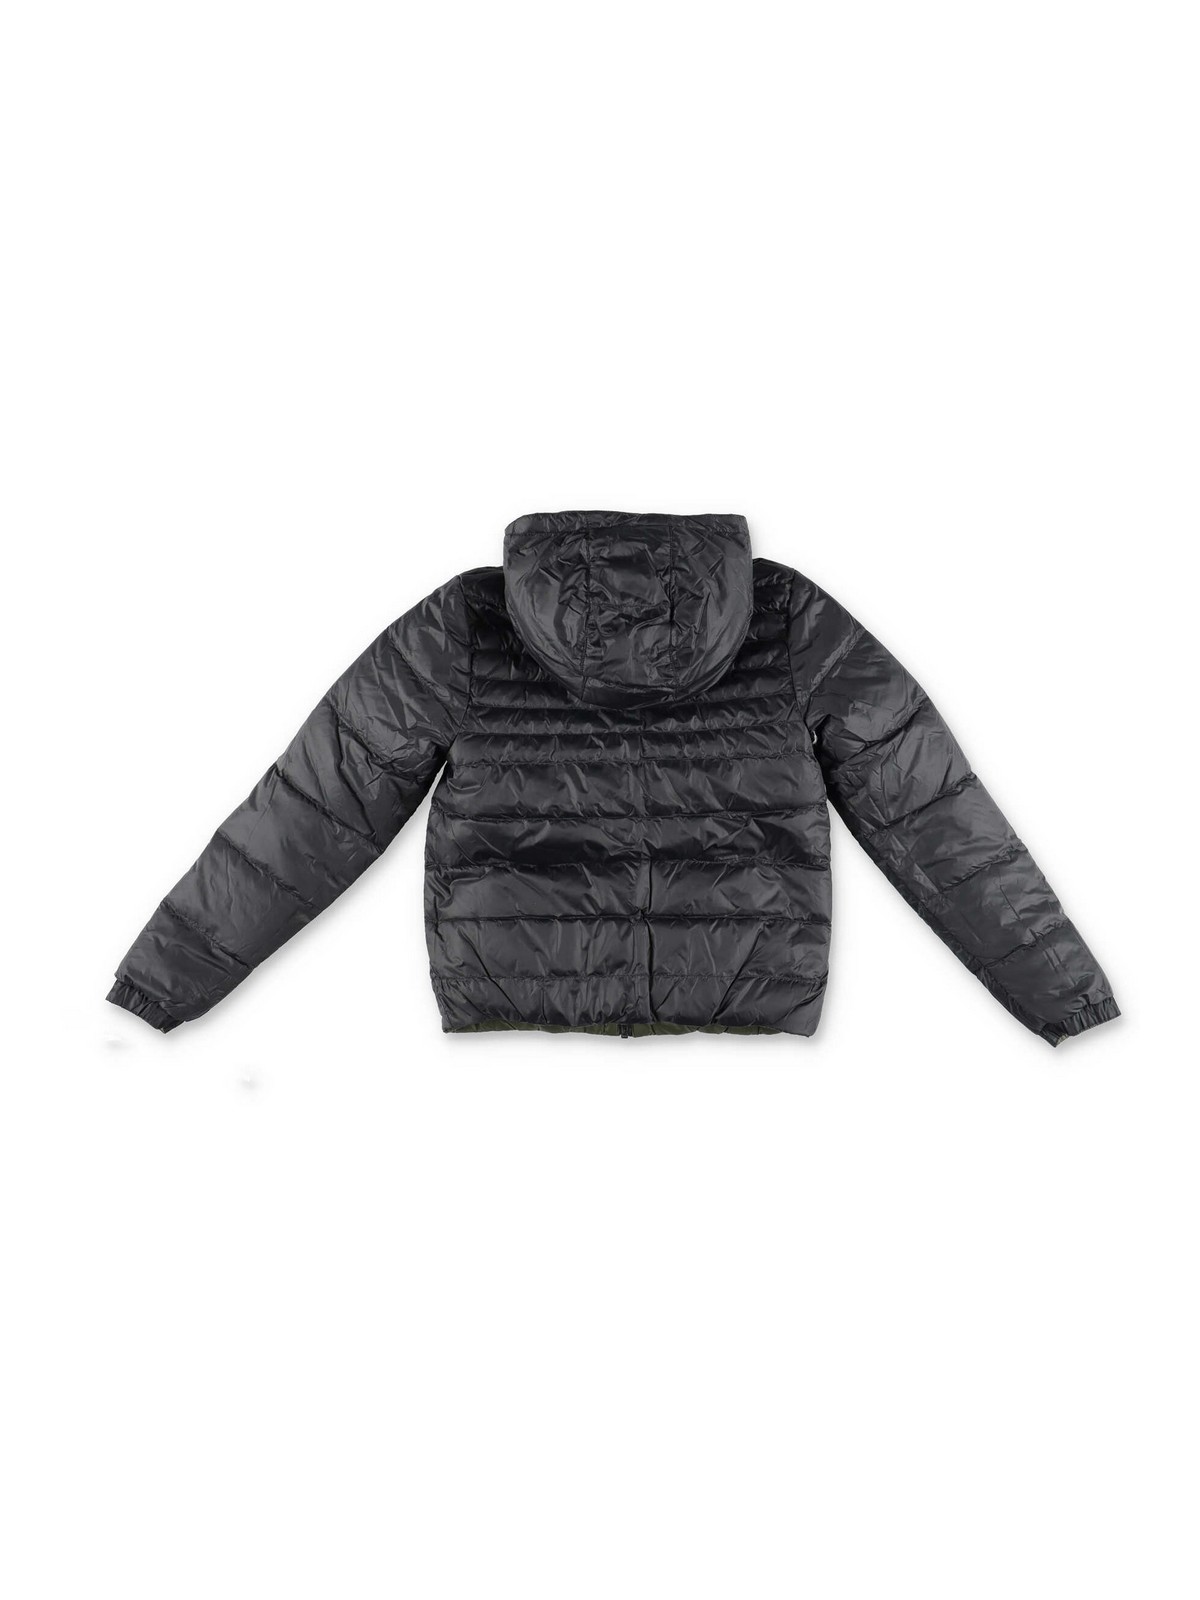 Tien buitenspiegel Ademen Padded jackets Hugo Boss - Nylon reversible down feather jacket - J264876650